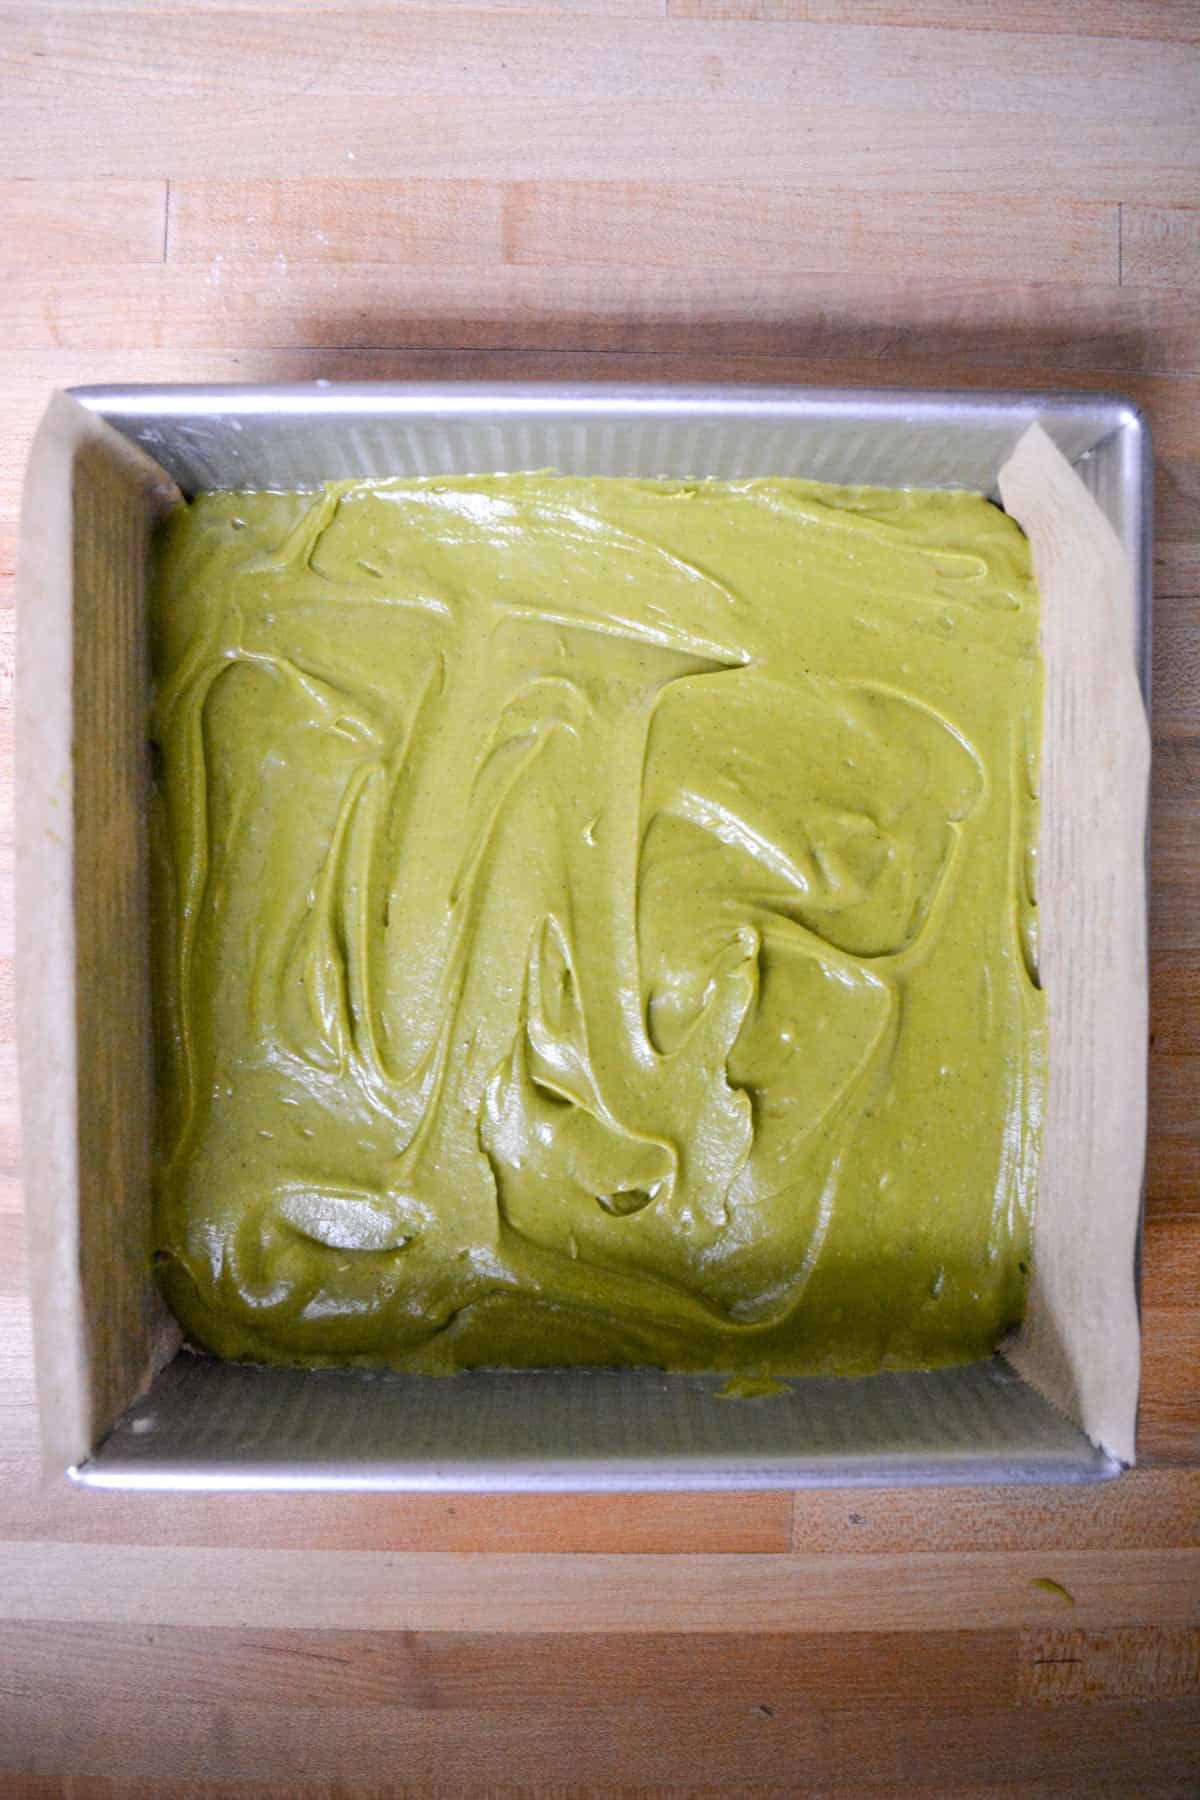 Green tea matcha cake batter in a square baking pan.